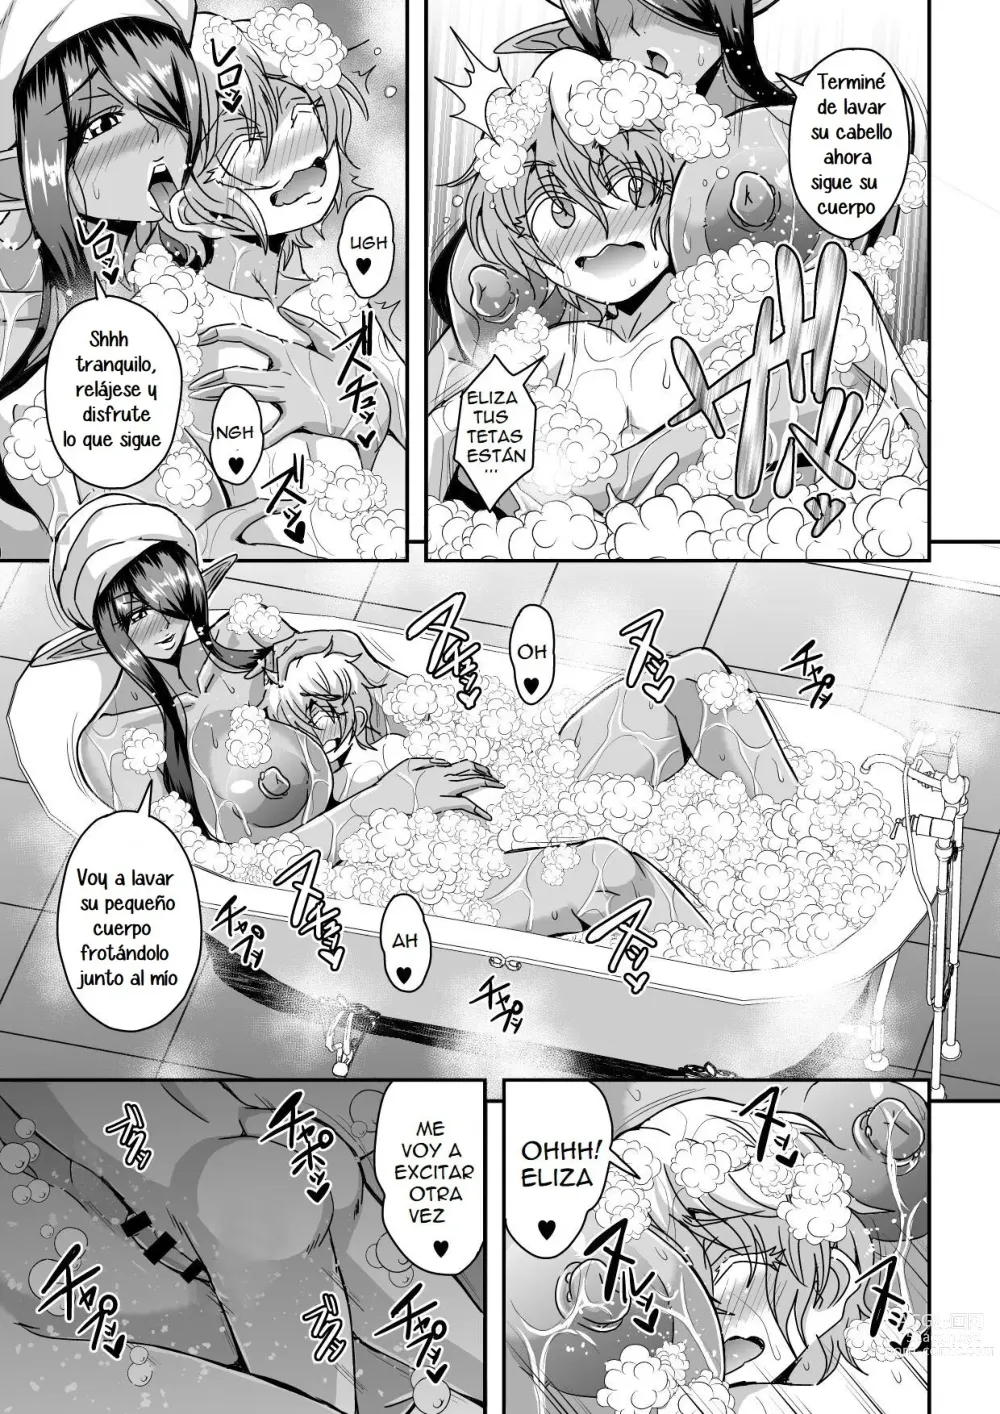 Page 28 of doujinshi Destruire mil mundos con tal de ir a la cama con mi señor una vez mas